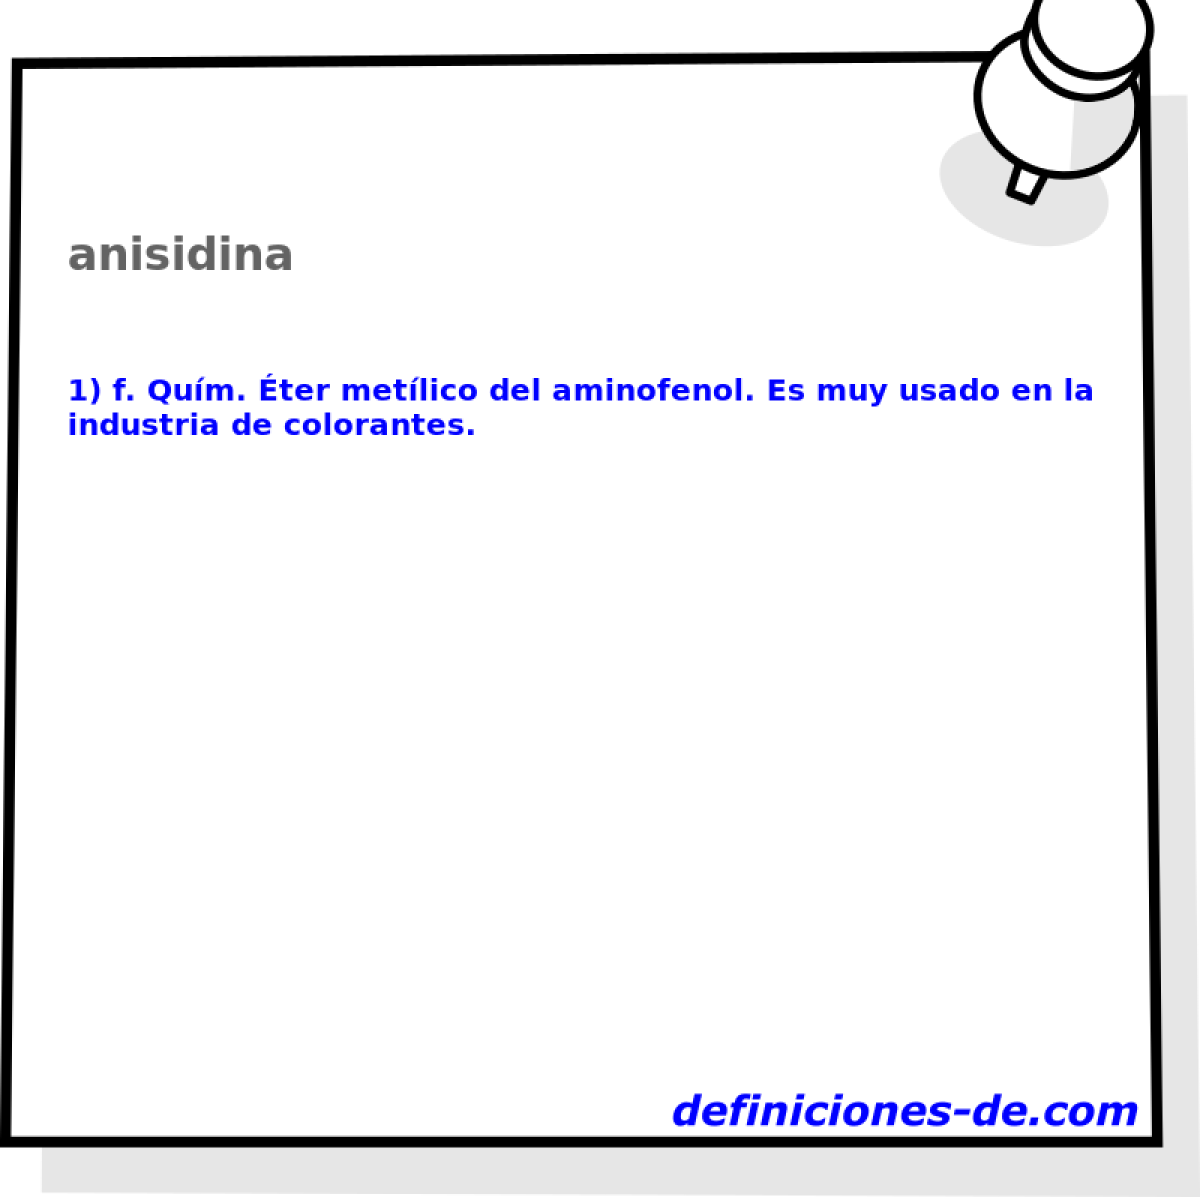 anisidina 